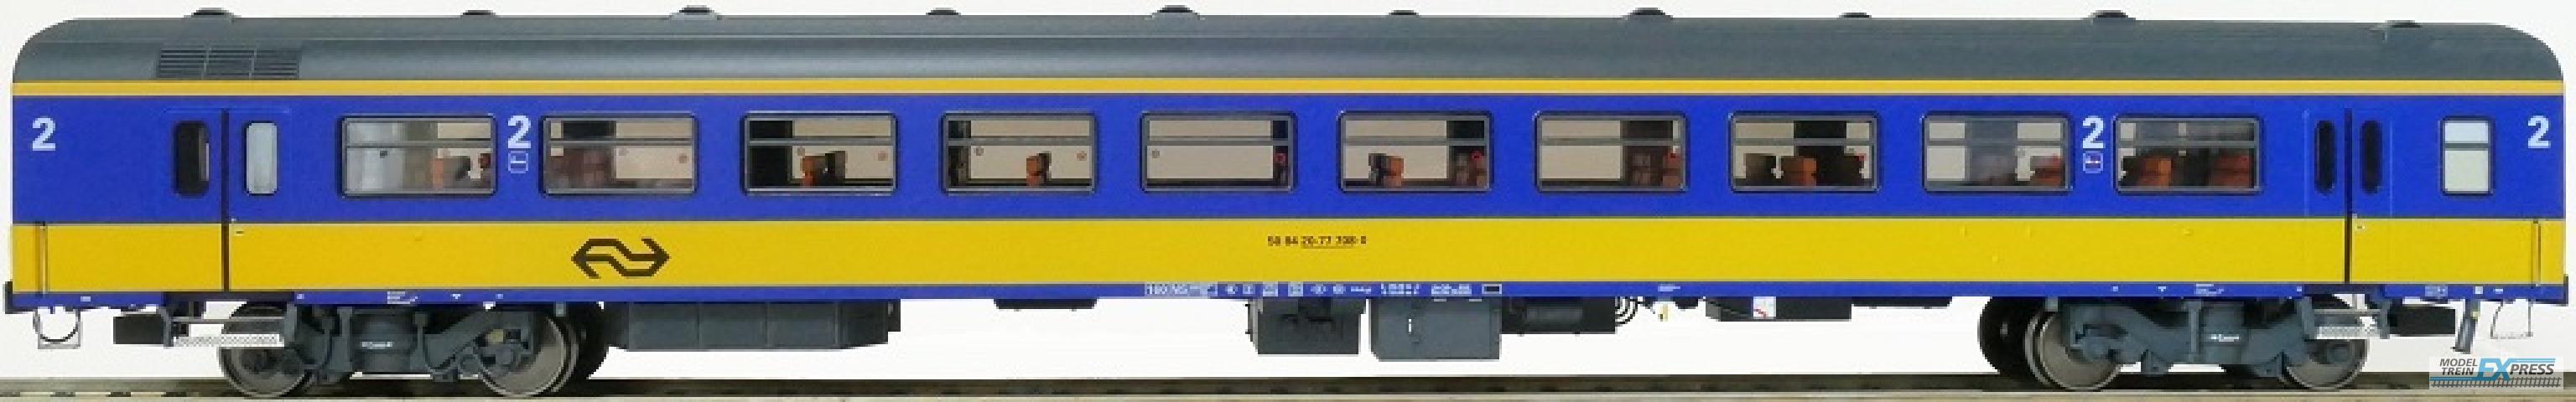 Exact-train 11167 NS ICR (Originalversion) für den Inlandseinsatz Reisezugwagen B (Farbe Gelb / Blau) mit Beleuchtung und Figuren, Ep. IV